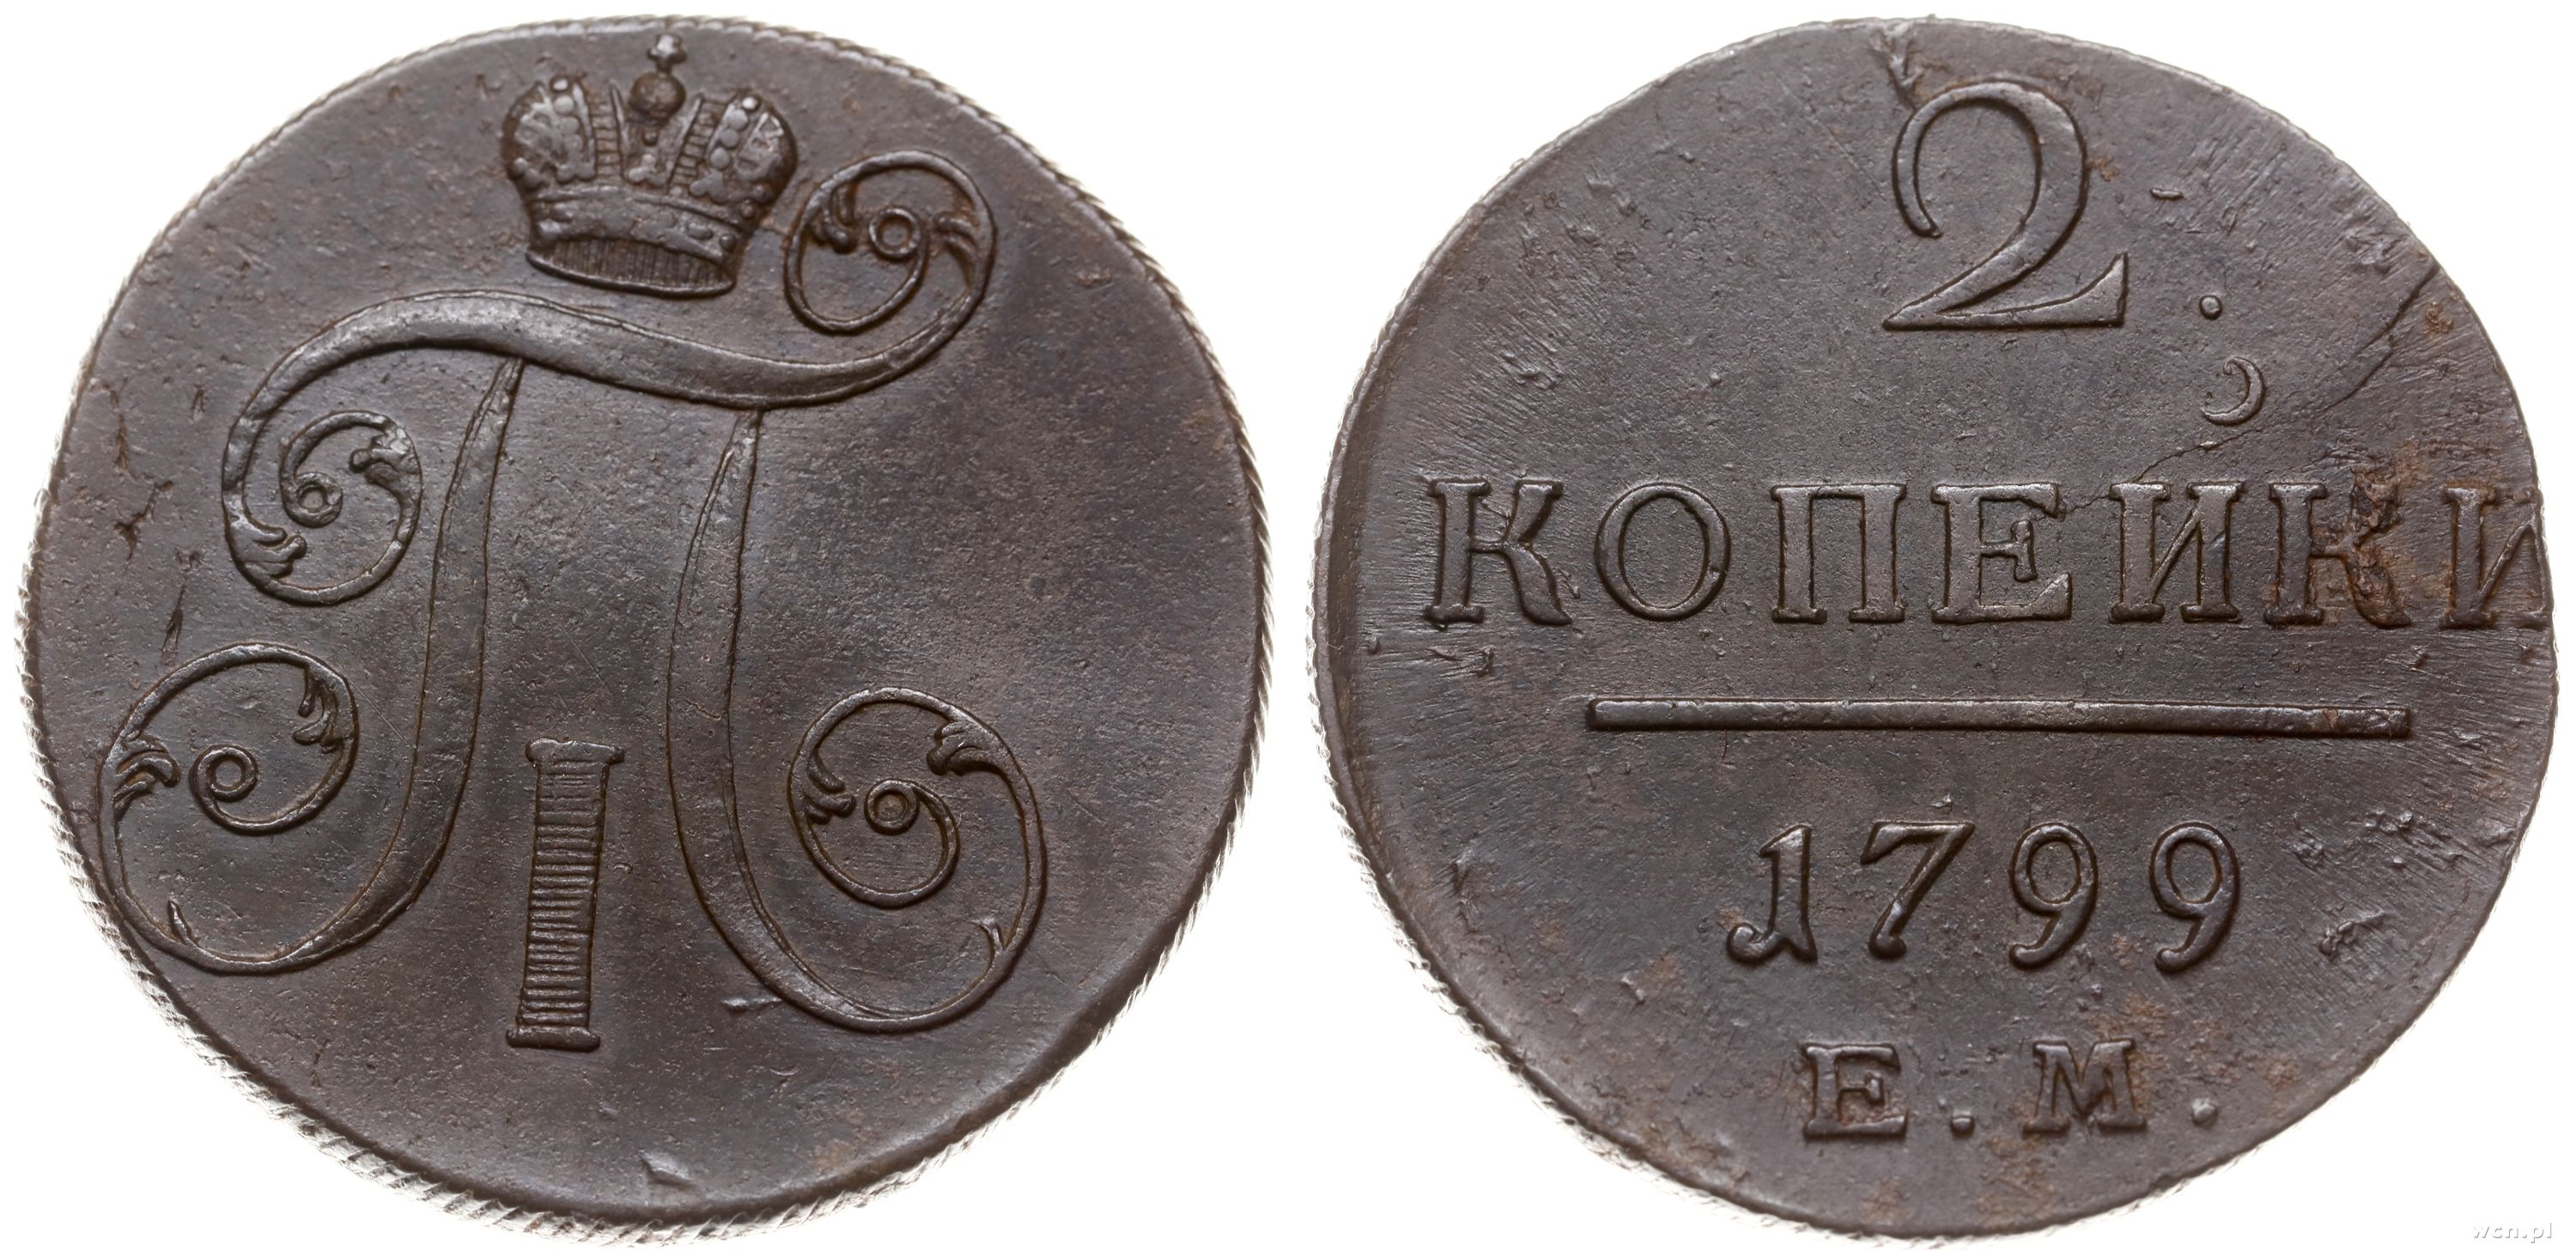 4 рубля 5 копеек. Деньга 1798 ем. Монета деньга 1798 ем a111540. Стоимость монеты 2 копейки 1897 года. Монета 1 деньга 1797 ем.